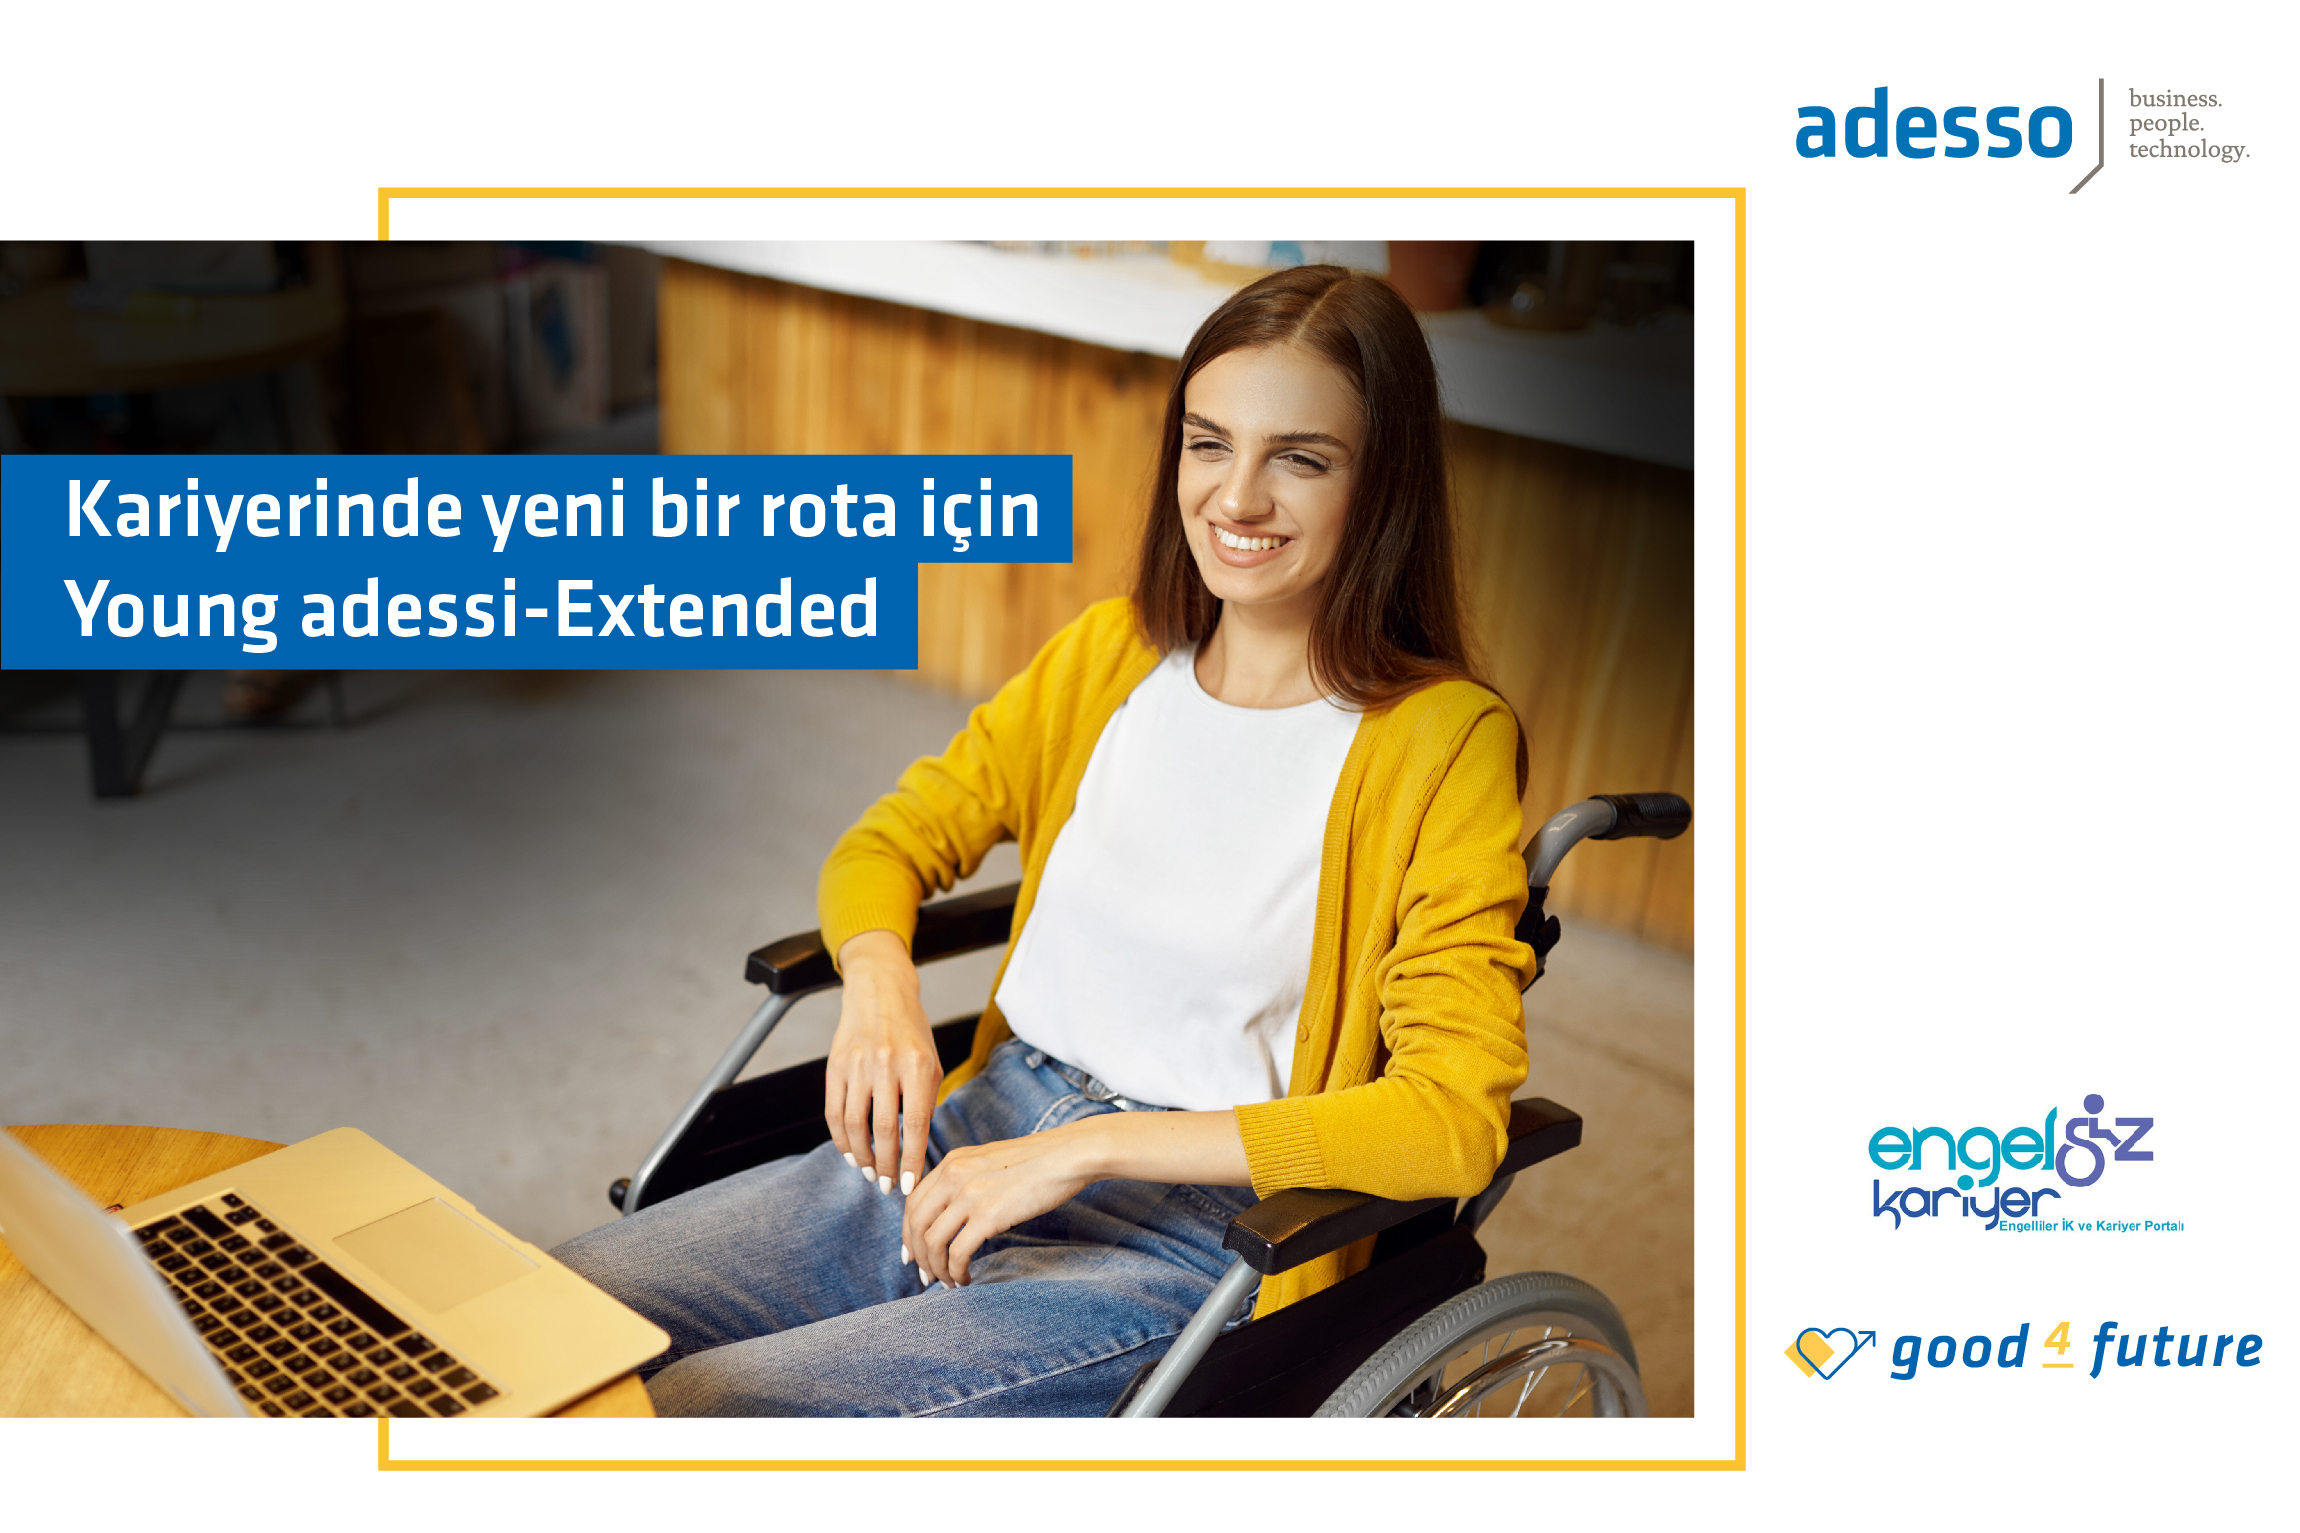 Sağ üstte mavi renkli Adesso logosu, ortada bilgisayar karşısında gülümseyerek tekerlekli sandalye de oturan bir kadın resmi ve sağ altta da engelsizkariyer.com logosu yer alıyor.